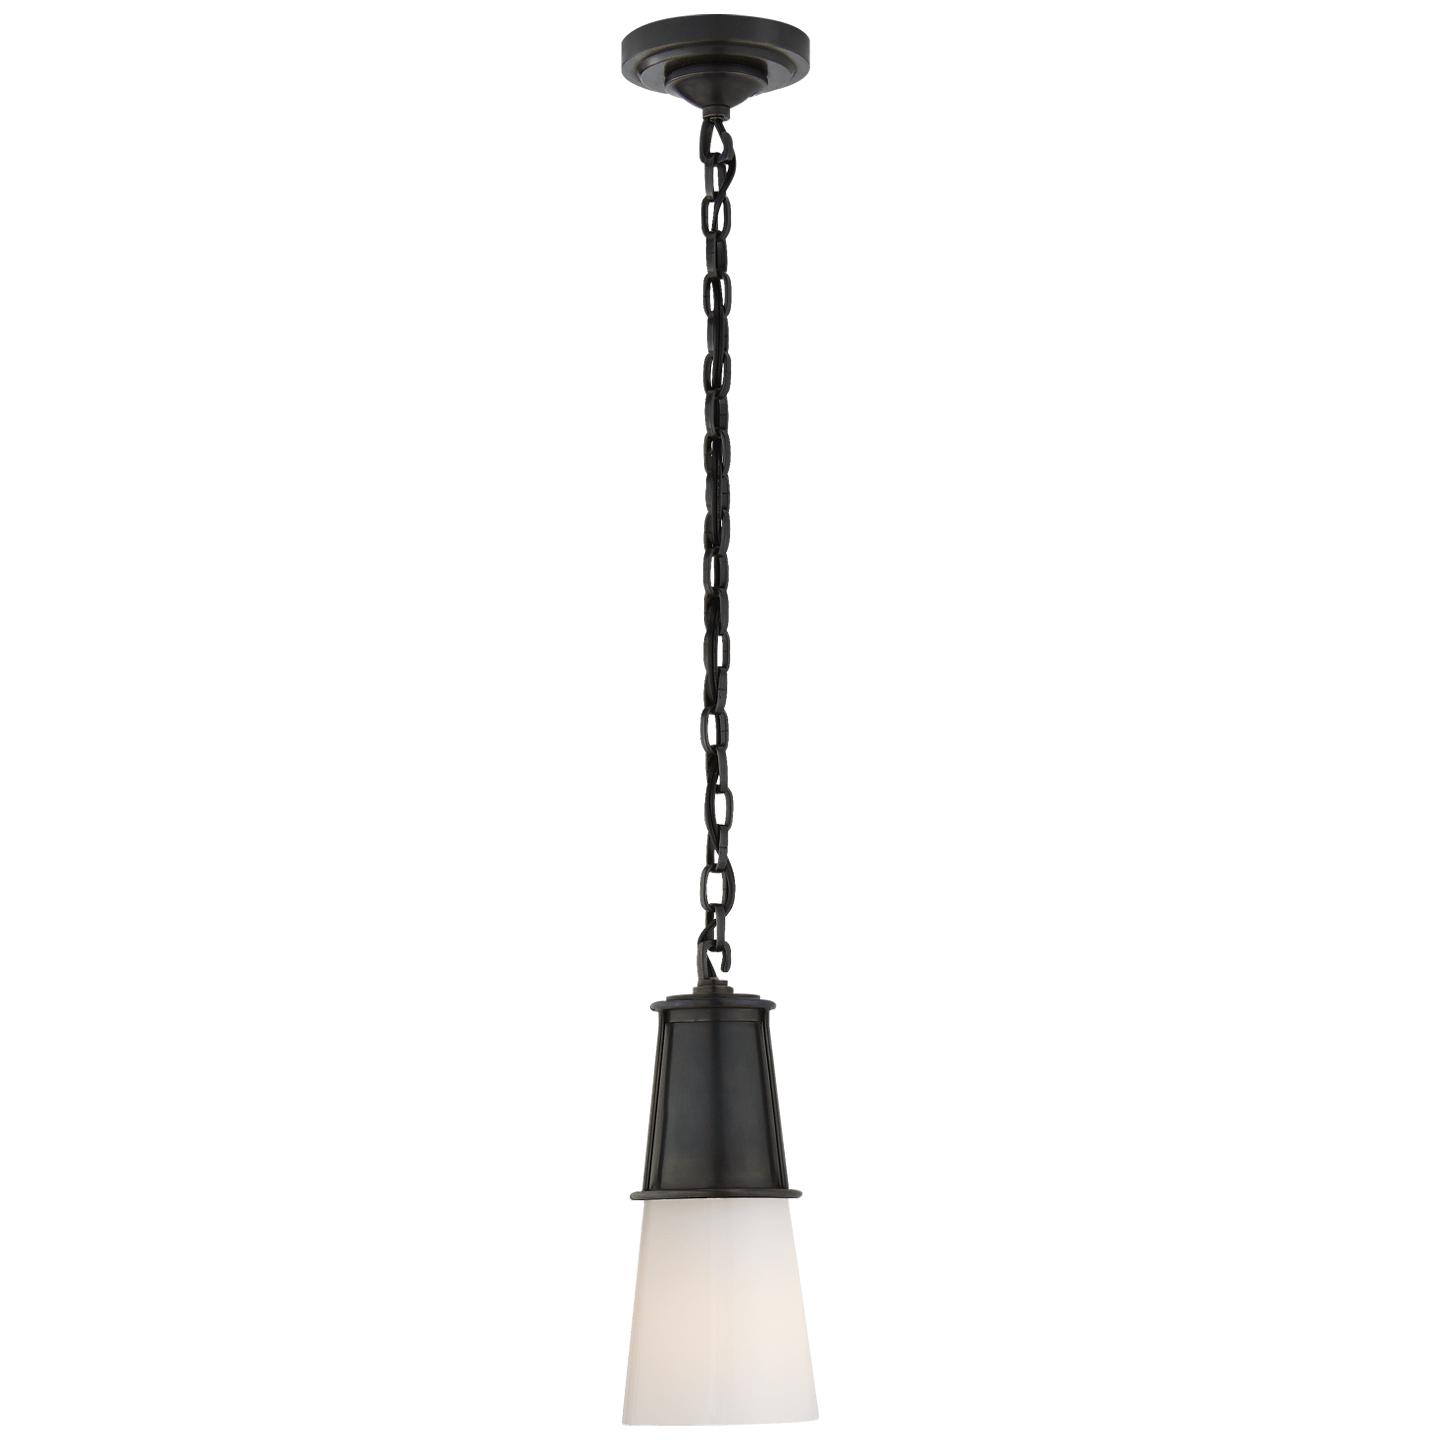 Купить Подвесной светильник Robinson Small Pendant в интернет-магазине roooms.ru